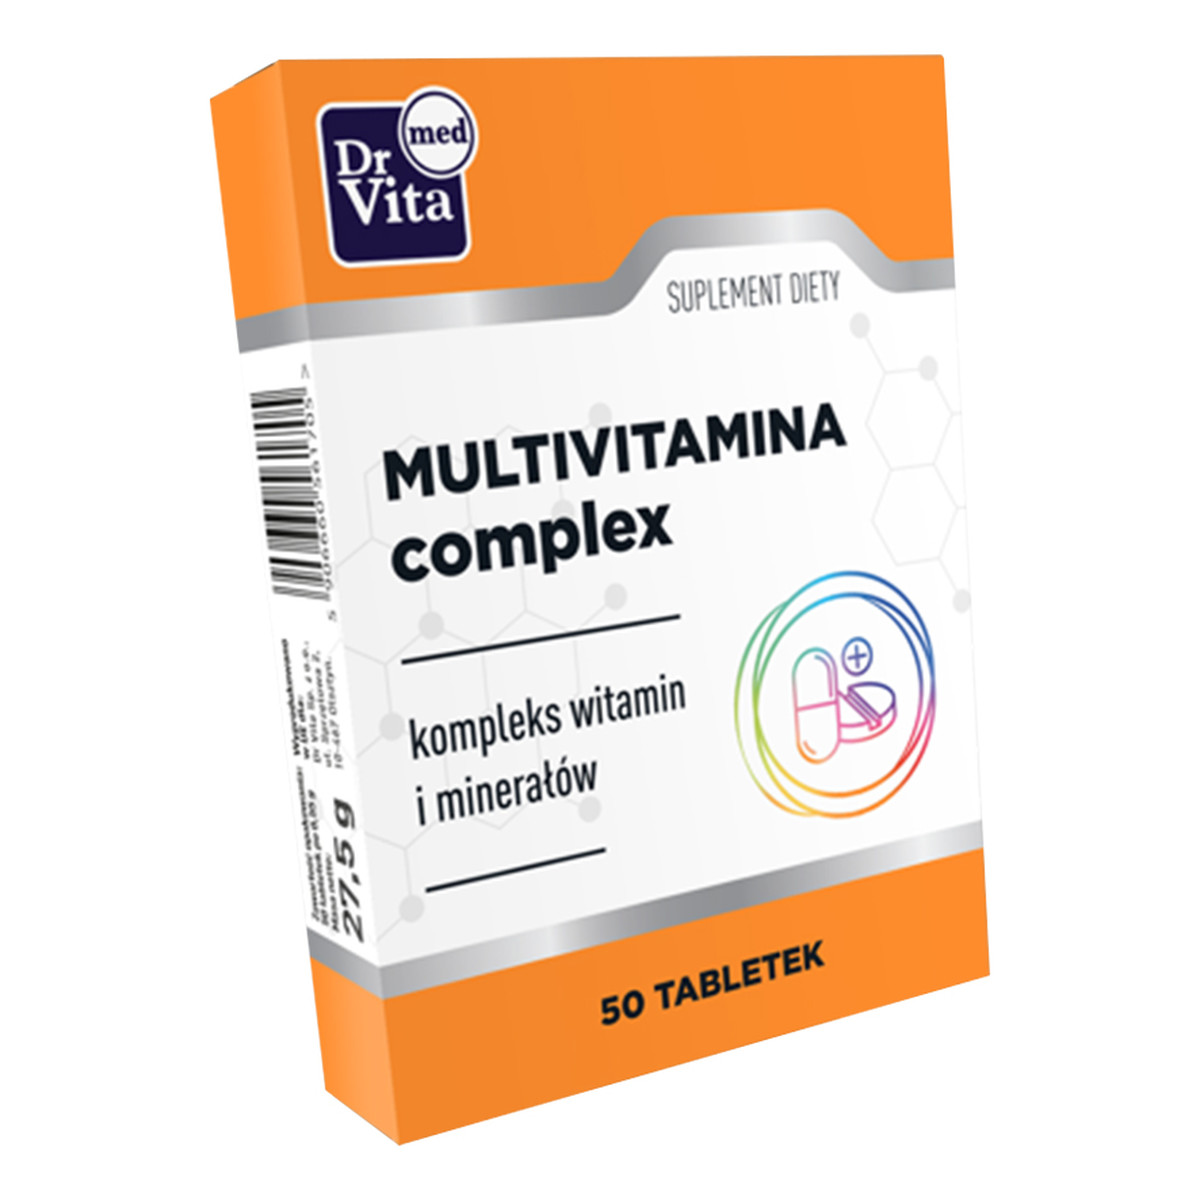 Dr Vita Multivitamina complex suplement diety 50 tabletek